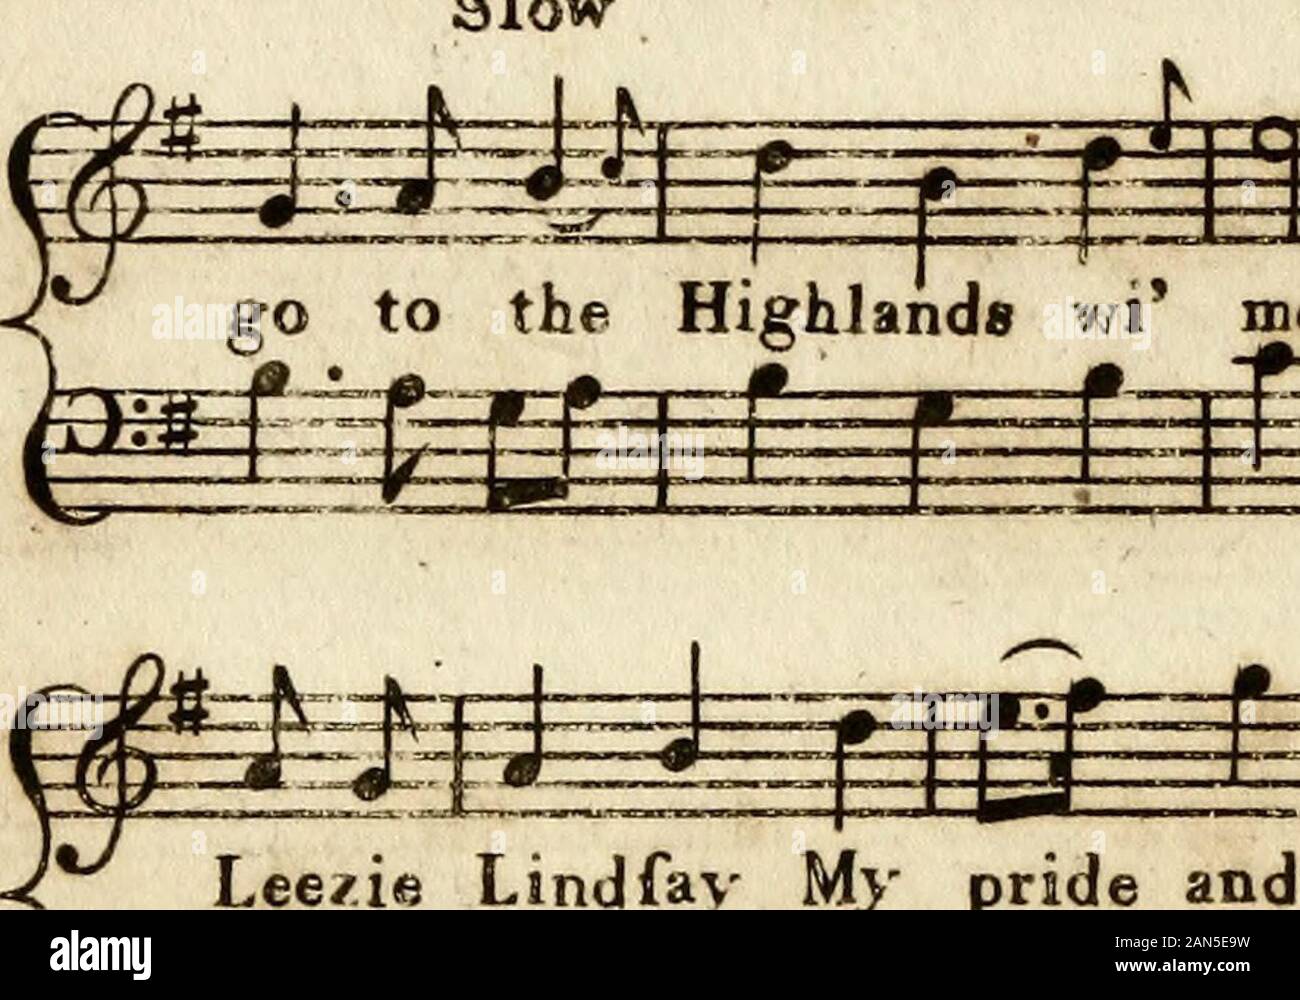 Gli Scozzesi museo musicale: costituito da sei cento canzoni scozzesi con la corretta basses per pianoforte forteHumbly dedicata al Club di cattura istituita a EdinrJune 1771. . 434 ** voi andate per le Highlands Leezie Lindfay, ye 53H ^^f^ Slo - andare verso le Highlands wi me voi andate per le Highlands. f m wm  III-jE°f-t=: gEgfa-J^NSE S Leezie Lindfav il mio orgoglio e la mia dar ling. 32^ ^ € + + + + + + + + + + 4 + + + + + + + ? +L'Aald moglie ayont il fuoco. Foto Stock